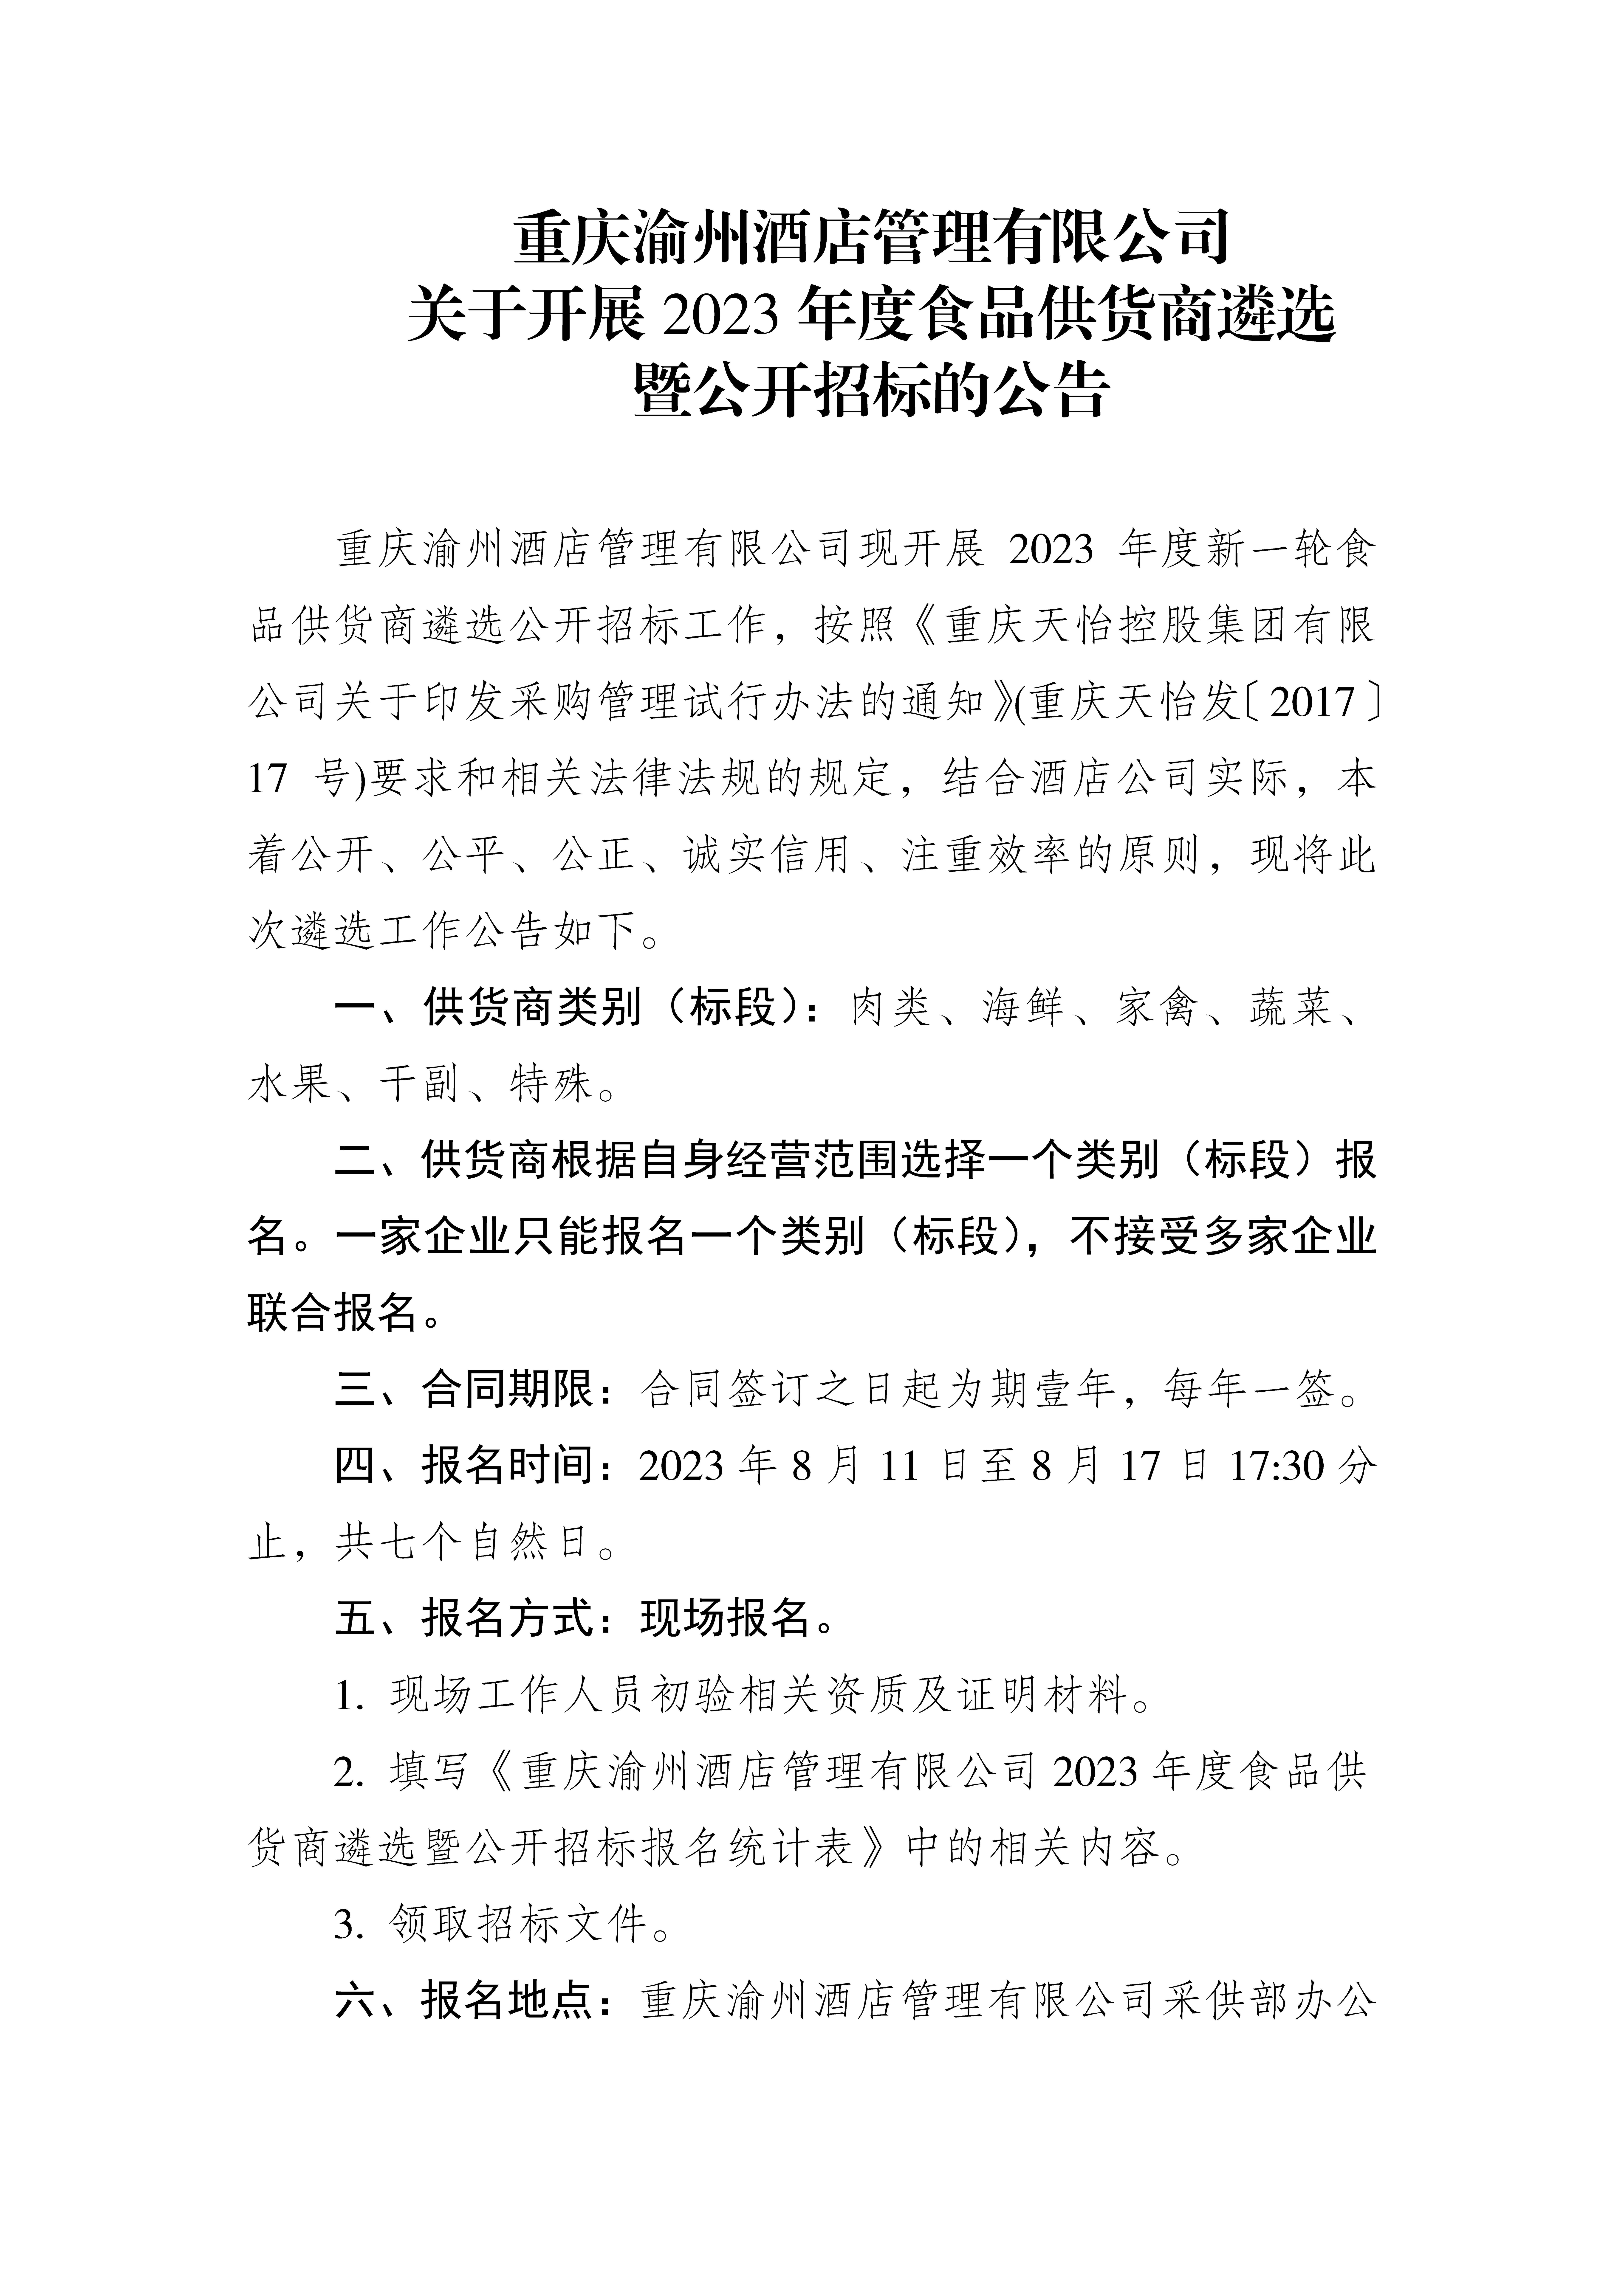 重庆渝州酒店管理有限公司 关于开展2023年度食品供货商遴选 暨公开招标的公告